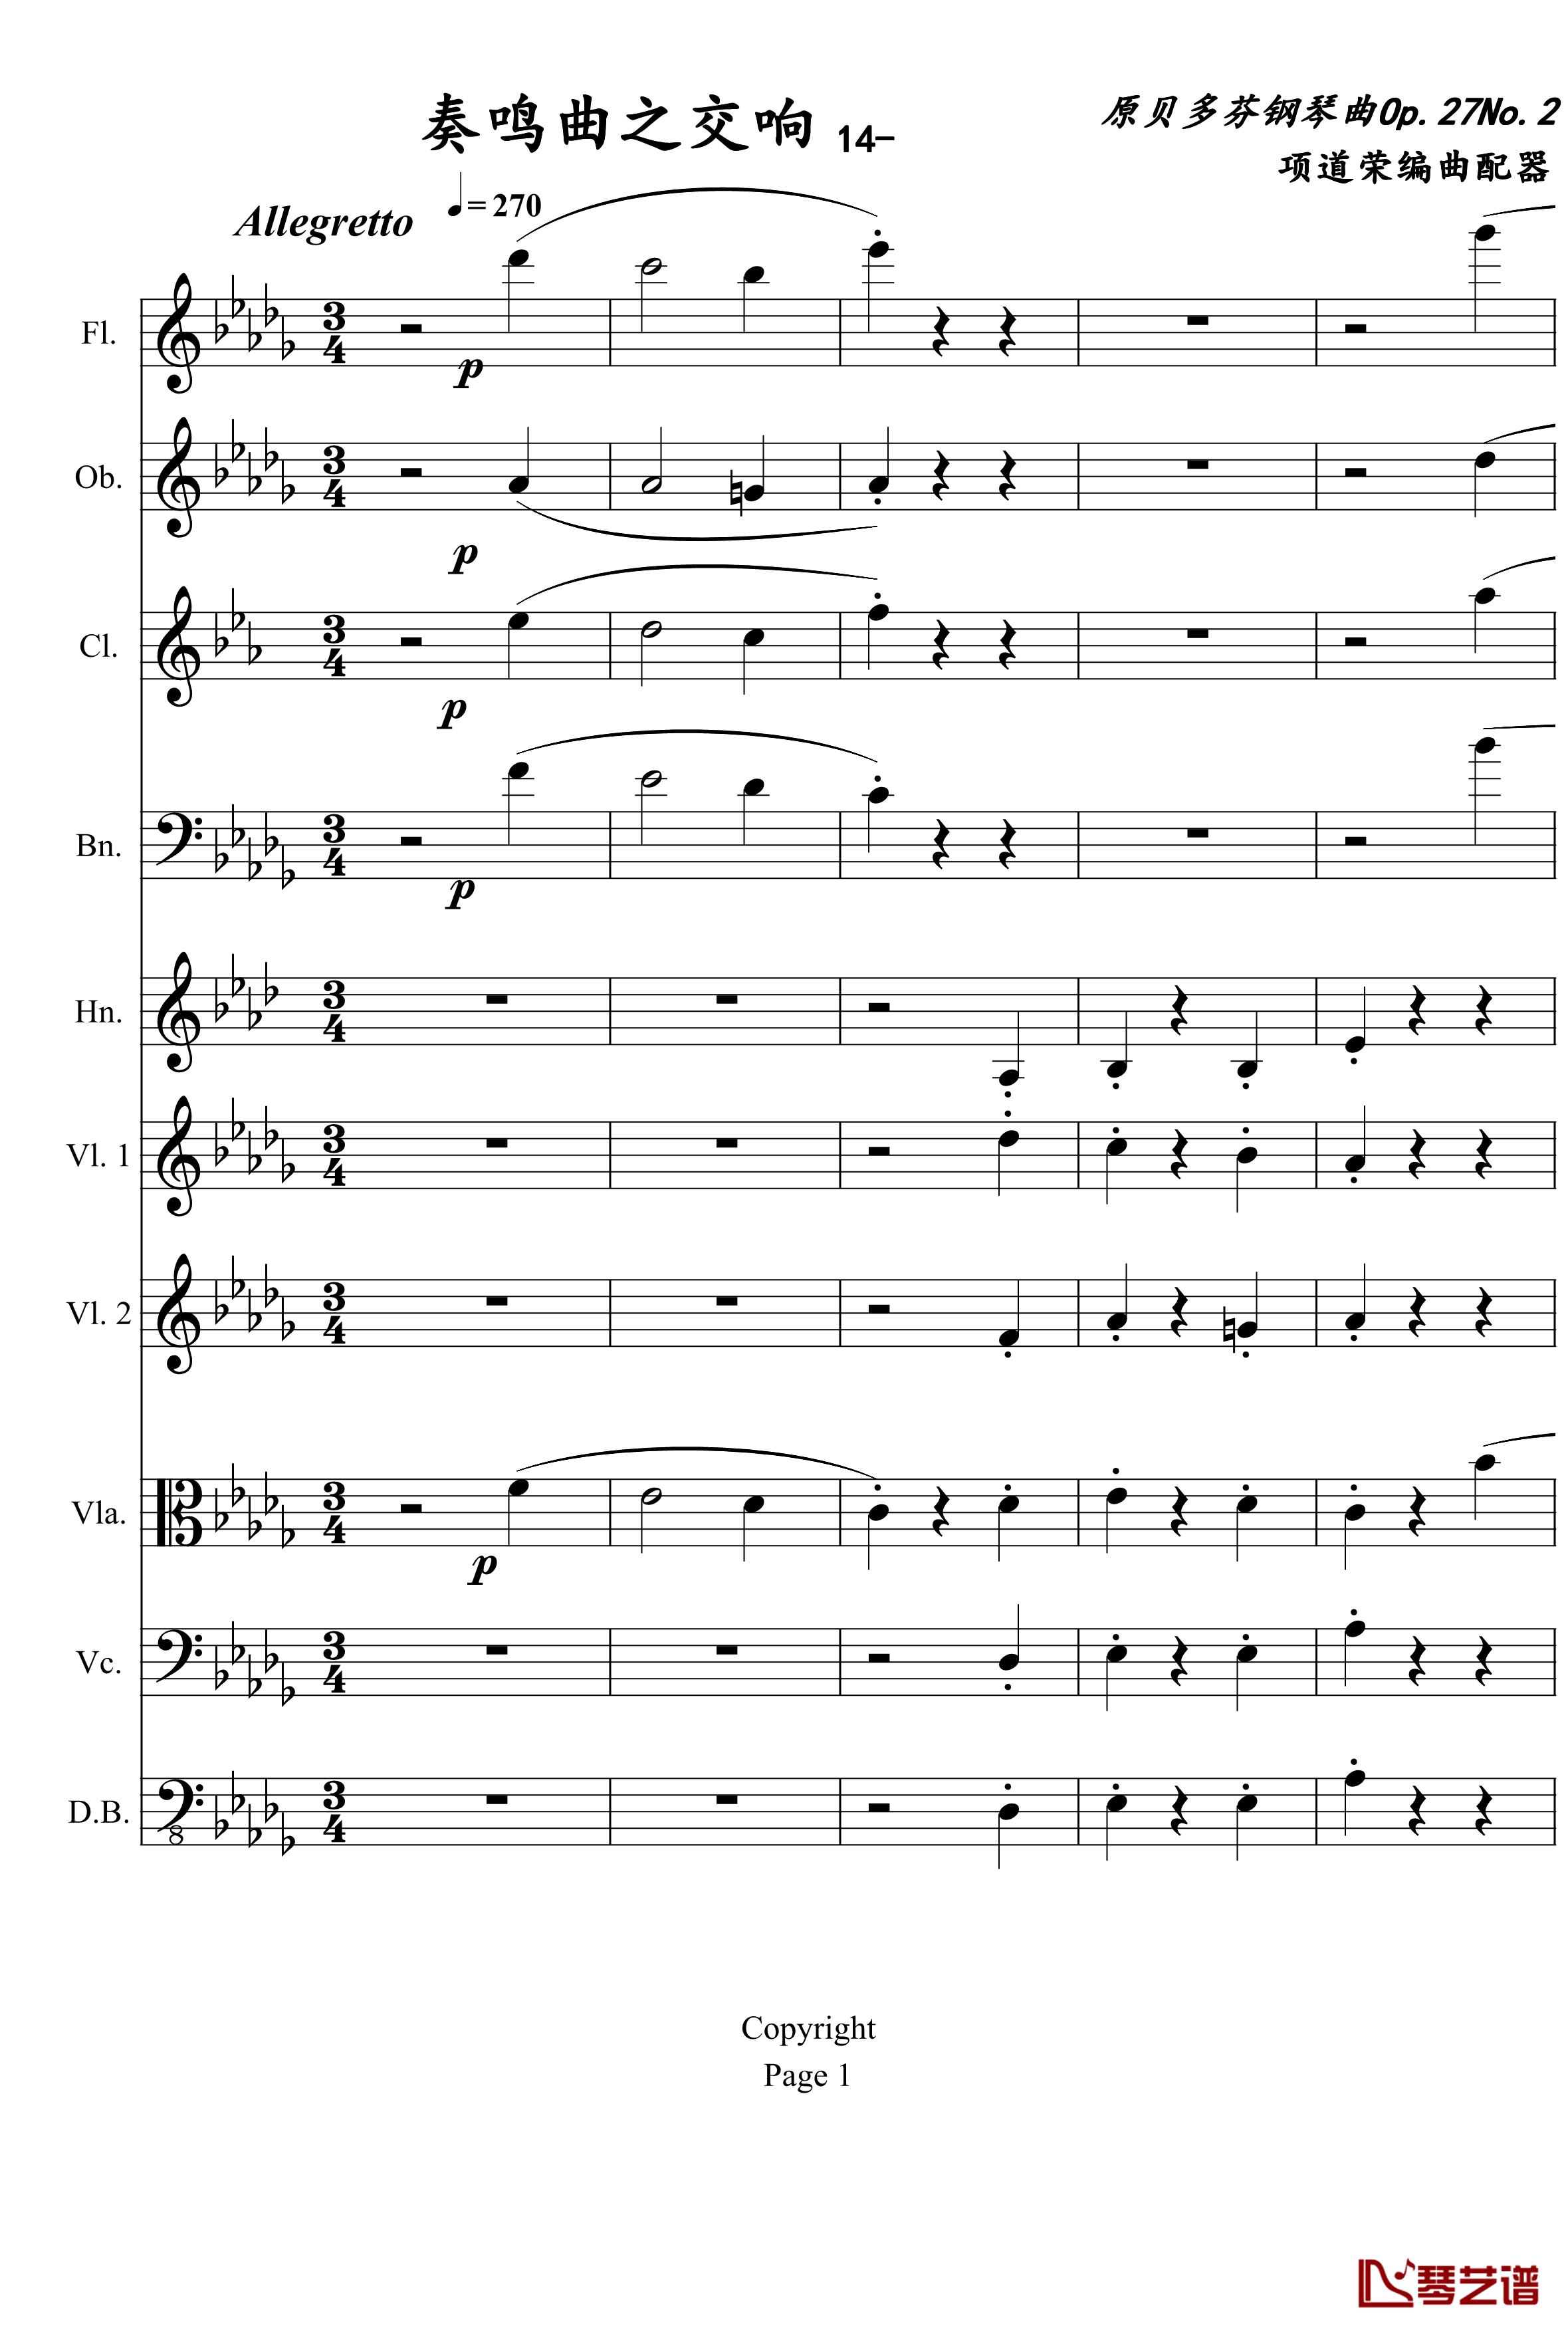 奏鸣曲之交响钢琴谱-第14首-Ⅱ-贝多芬-beethoven1